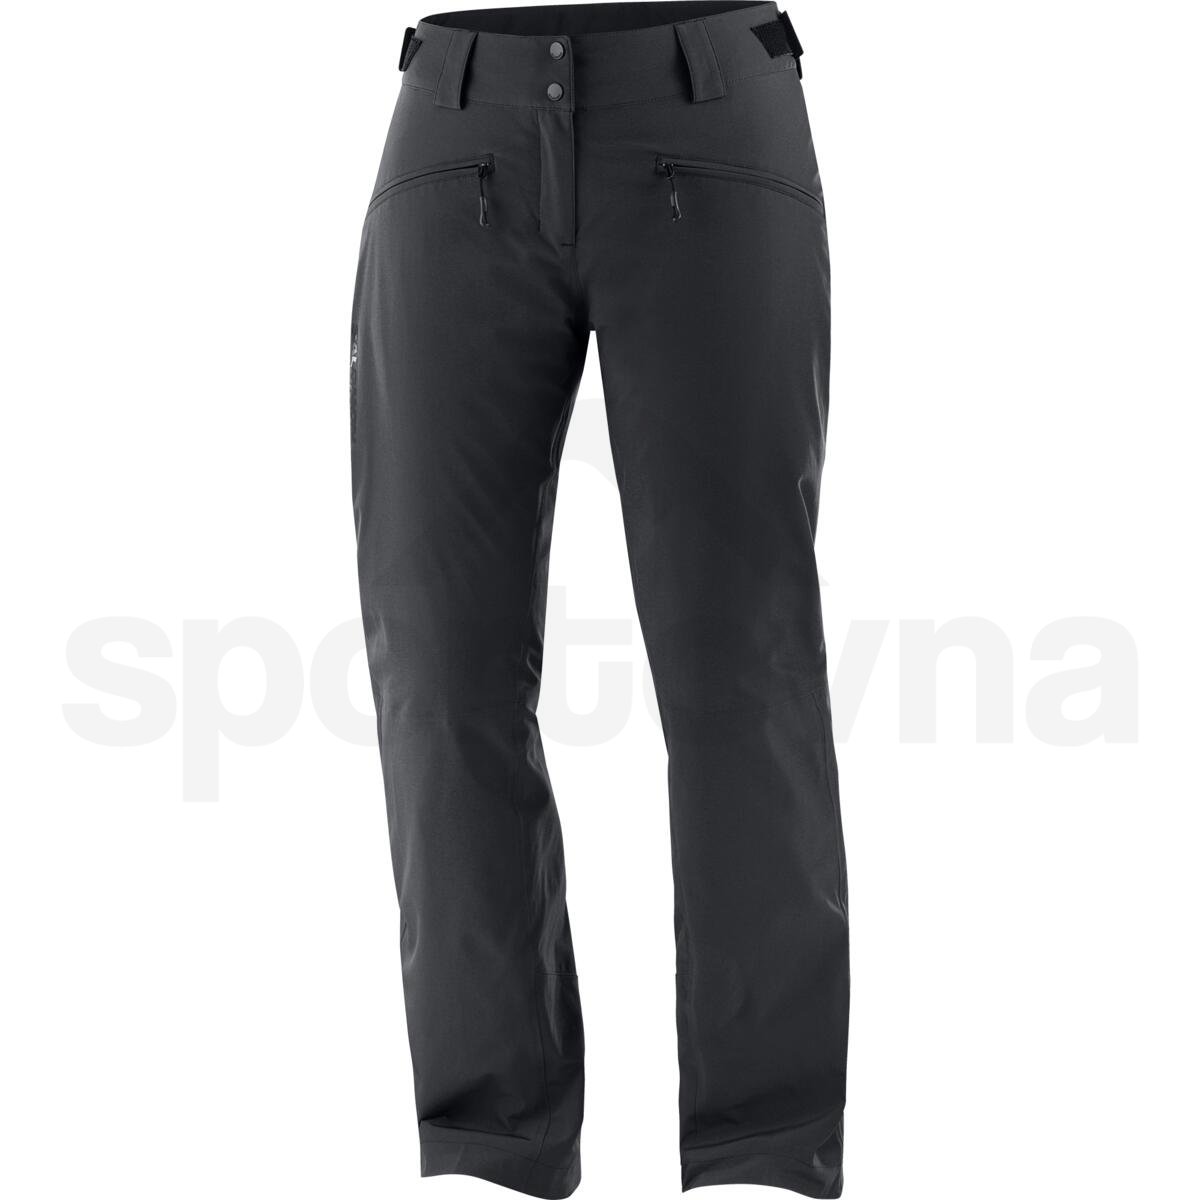 Kalhoty Salomon Edge Pant W - černá (prodloužená délka)